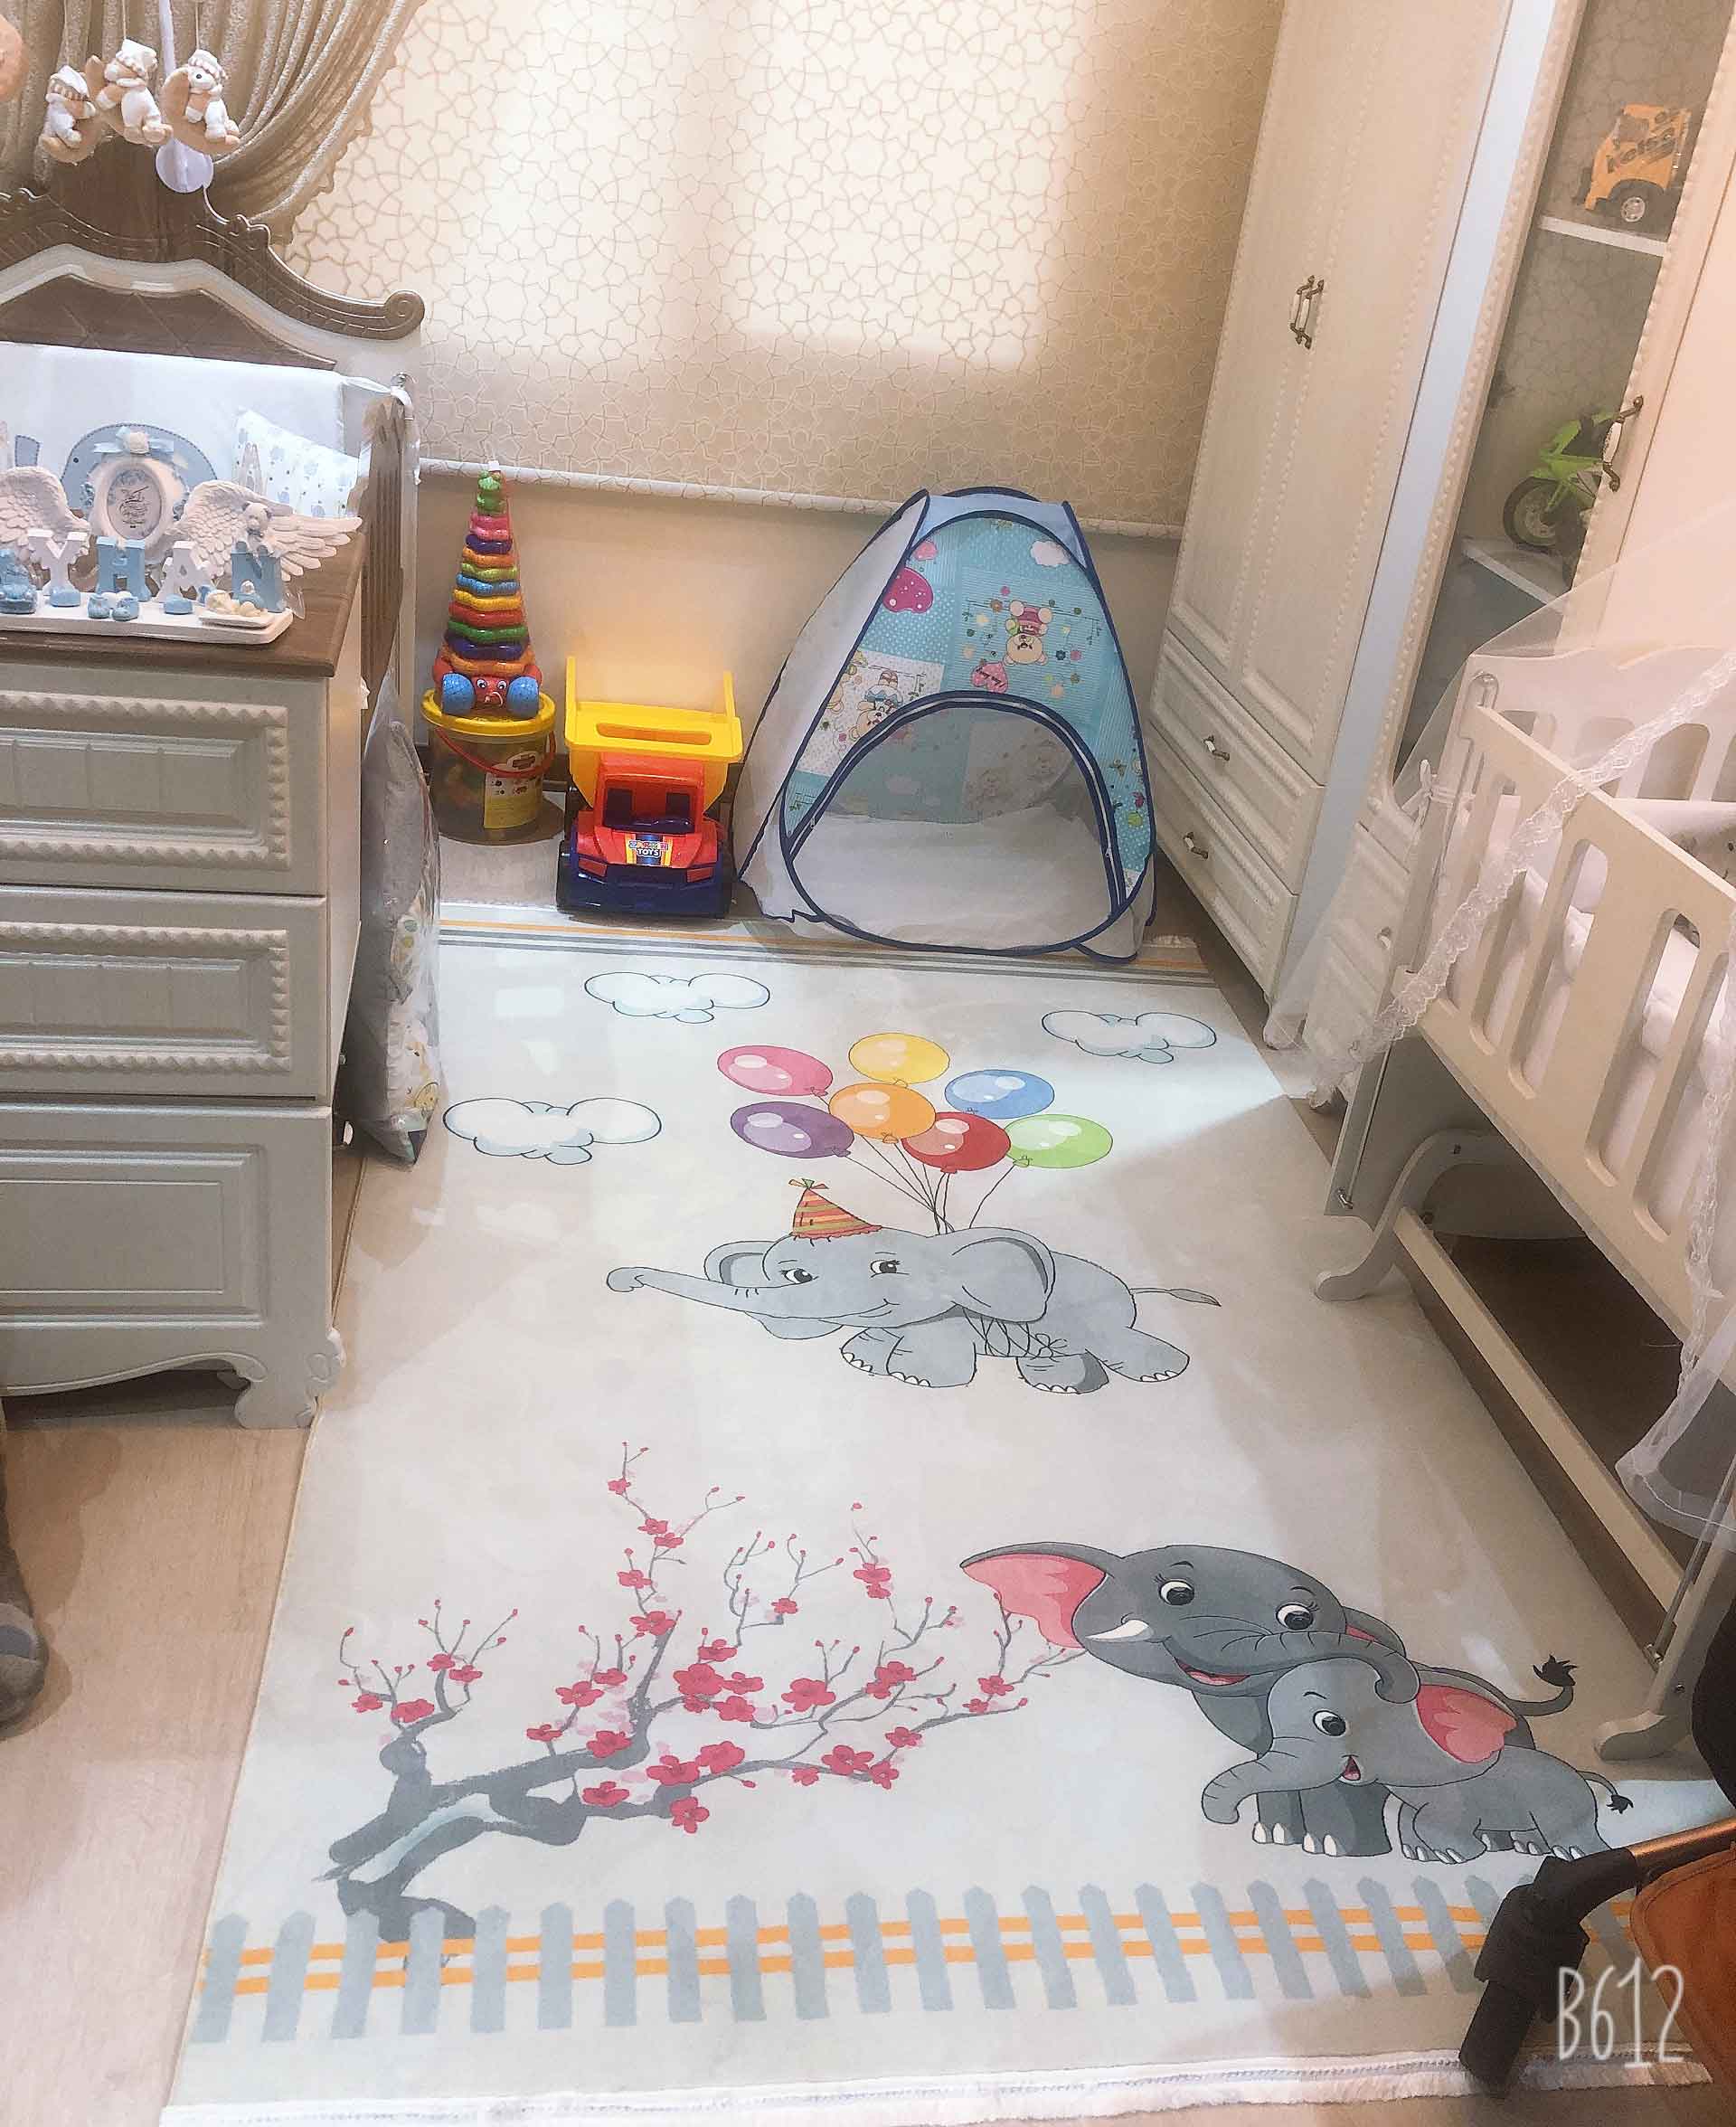 فرش کودک مهمترین بخش اتاق خواب فرزند شما!